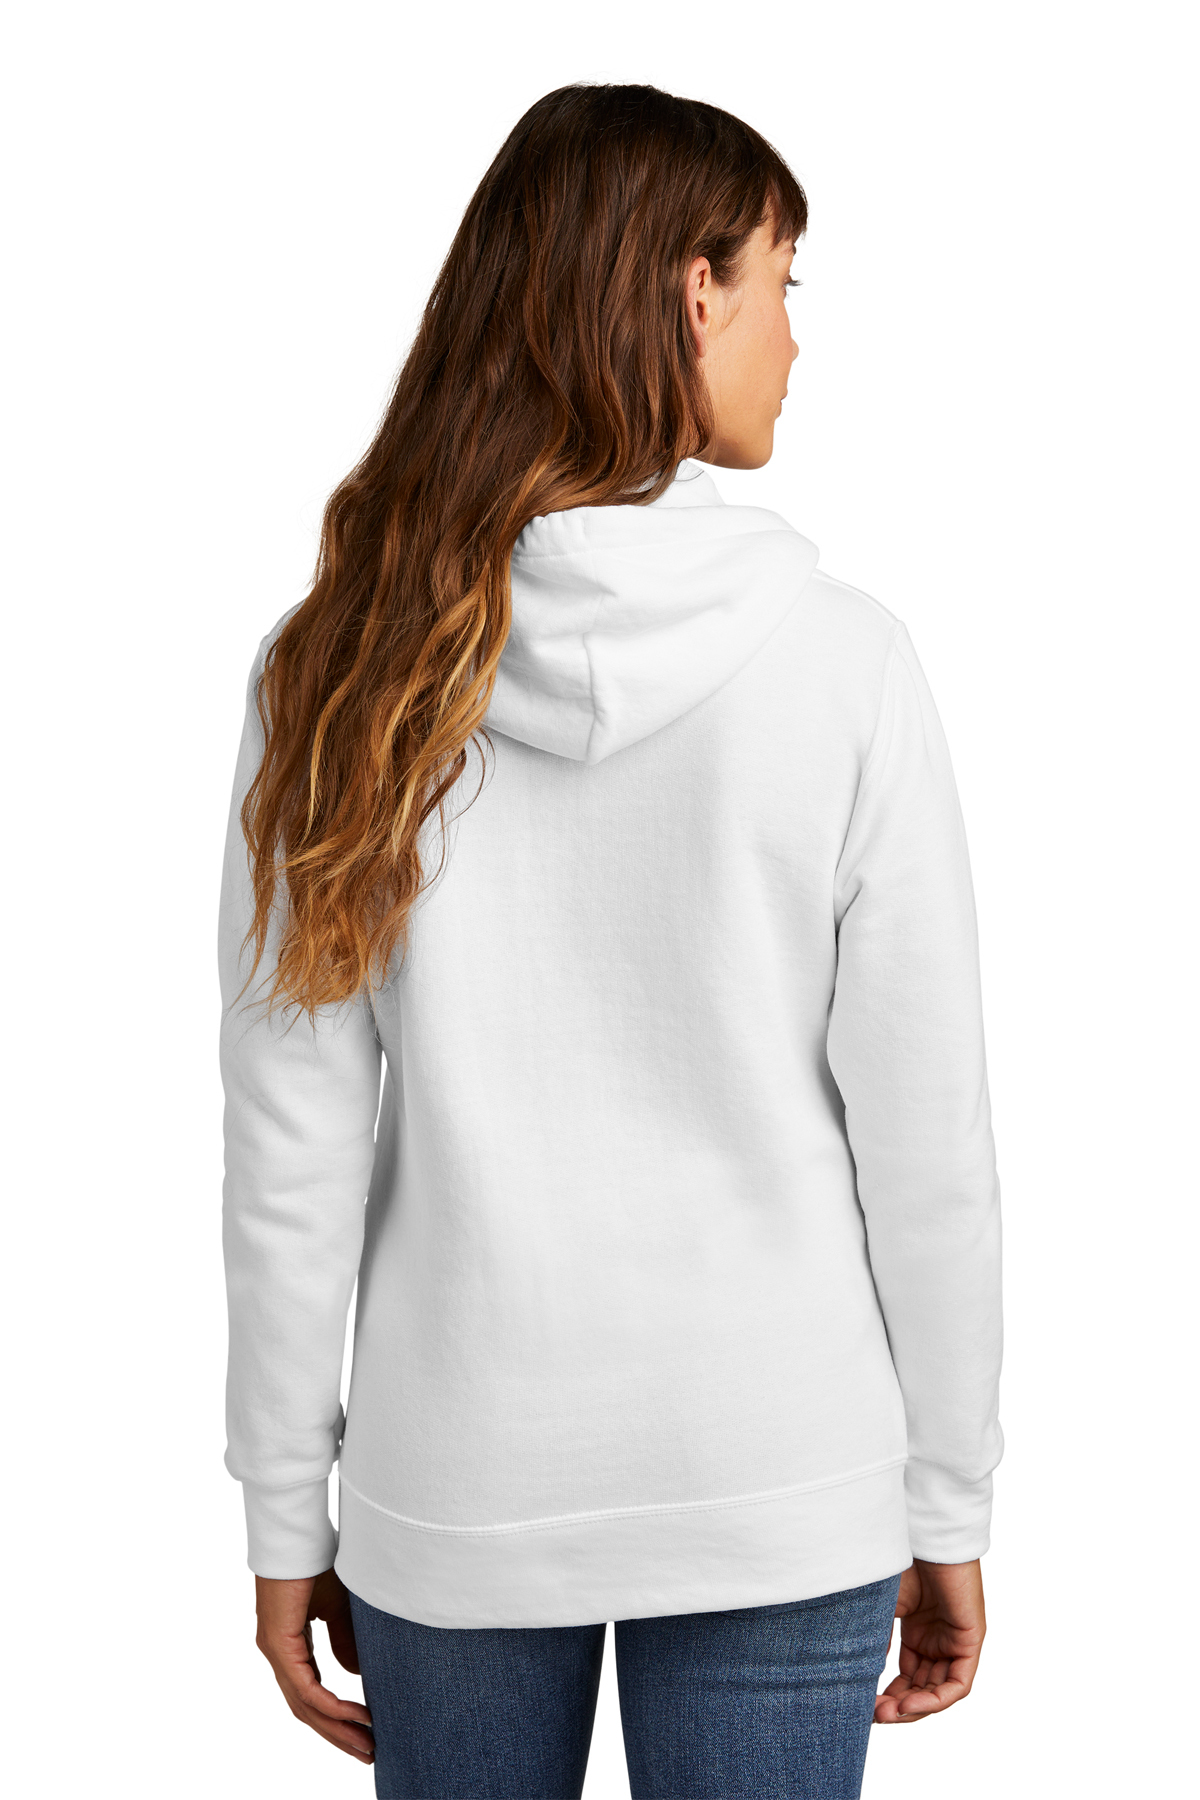 Ladies Classic Plain Sweatshirts Size 6 to 30 / XS to 4XL NEW SWEATSHIRT  JUMPER